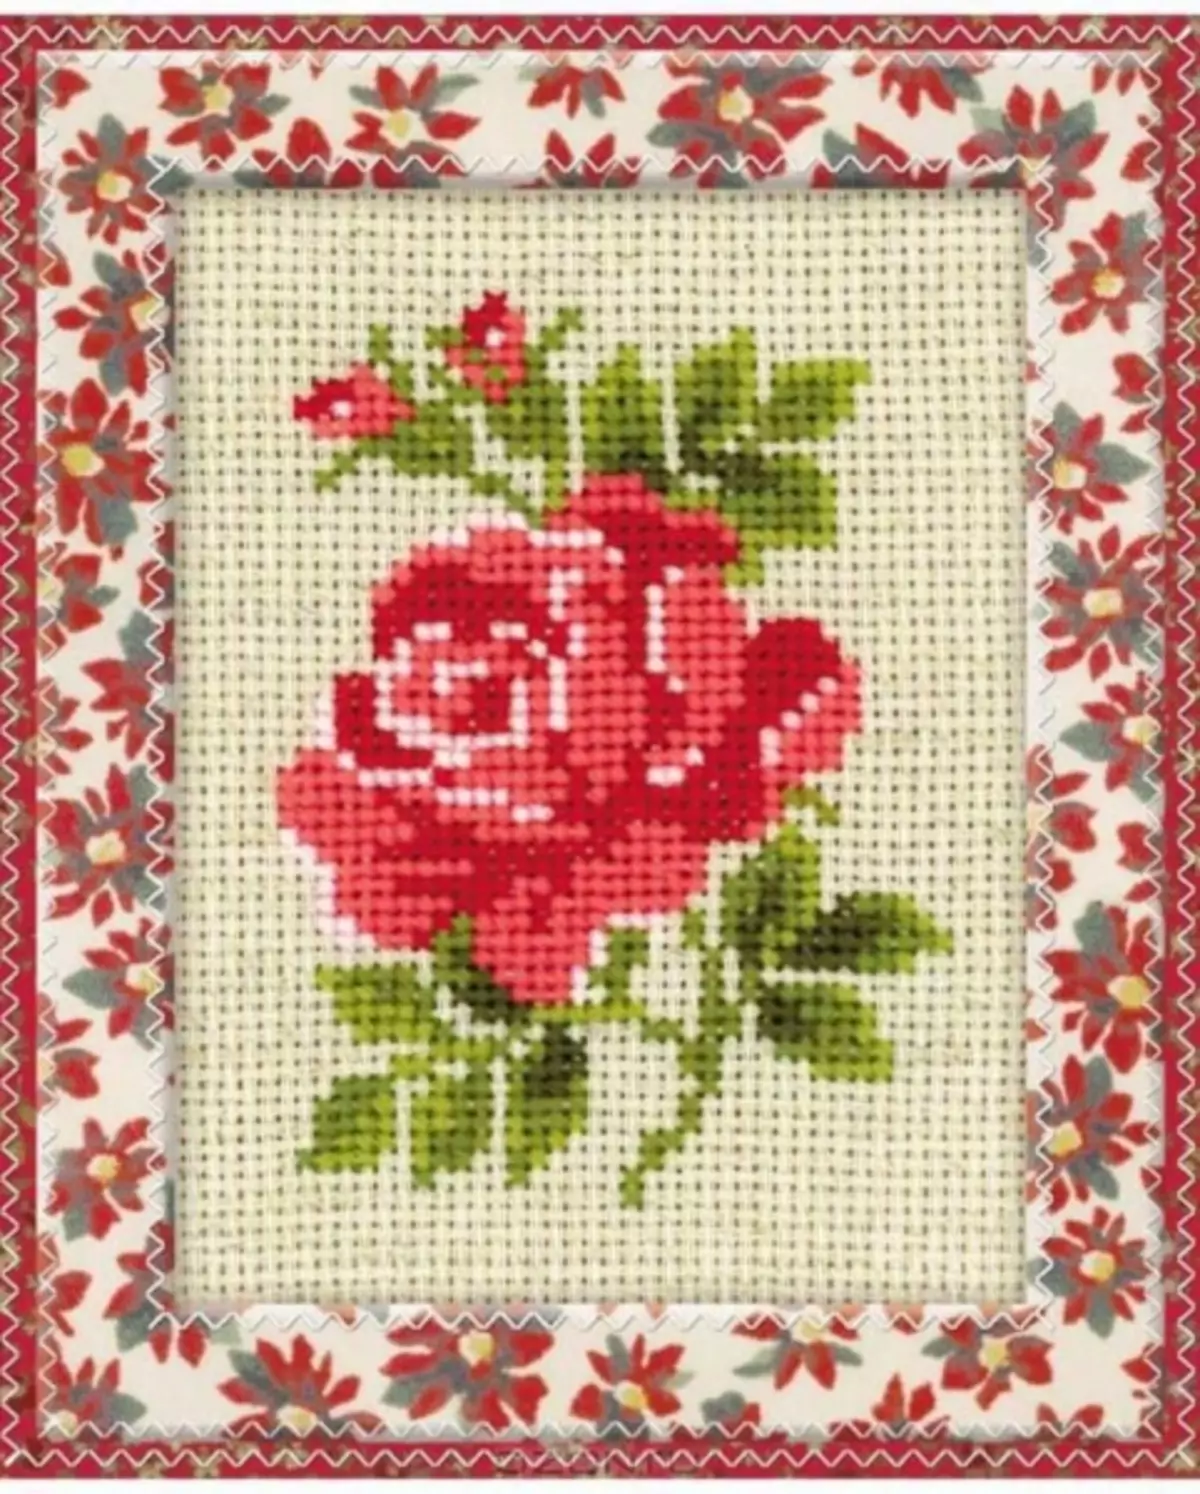 Rose Cross Výšivka: Sady v košíku, bílá kytice ve váze, dívka pro začátečníky, triptych a motýli